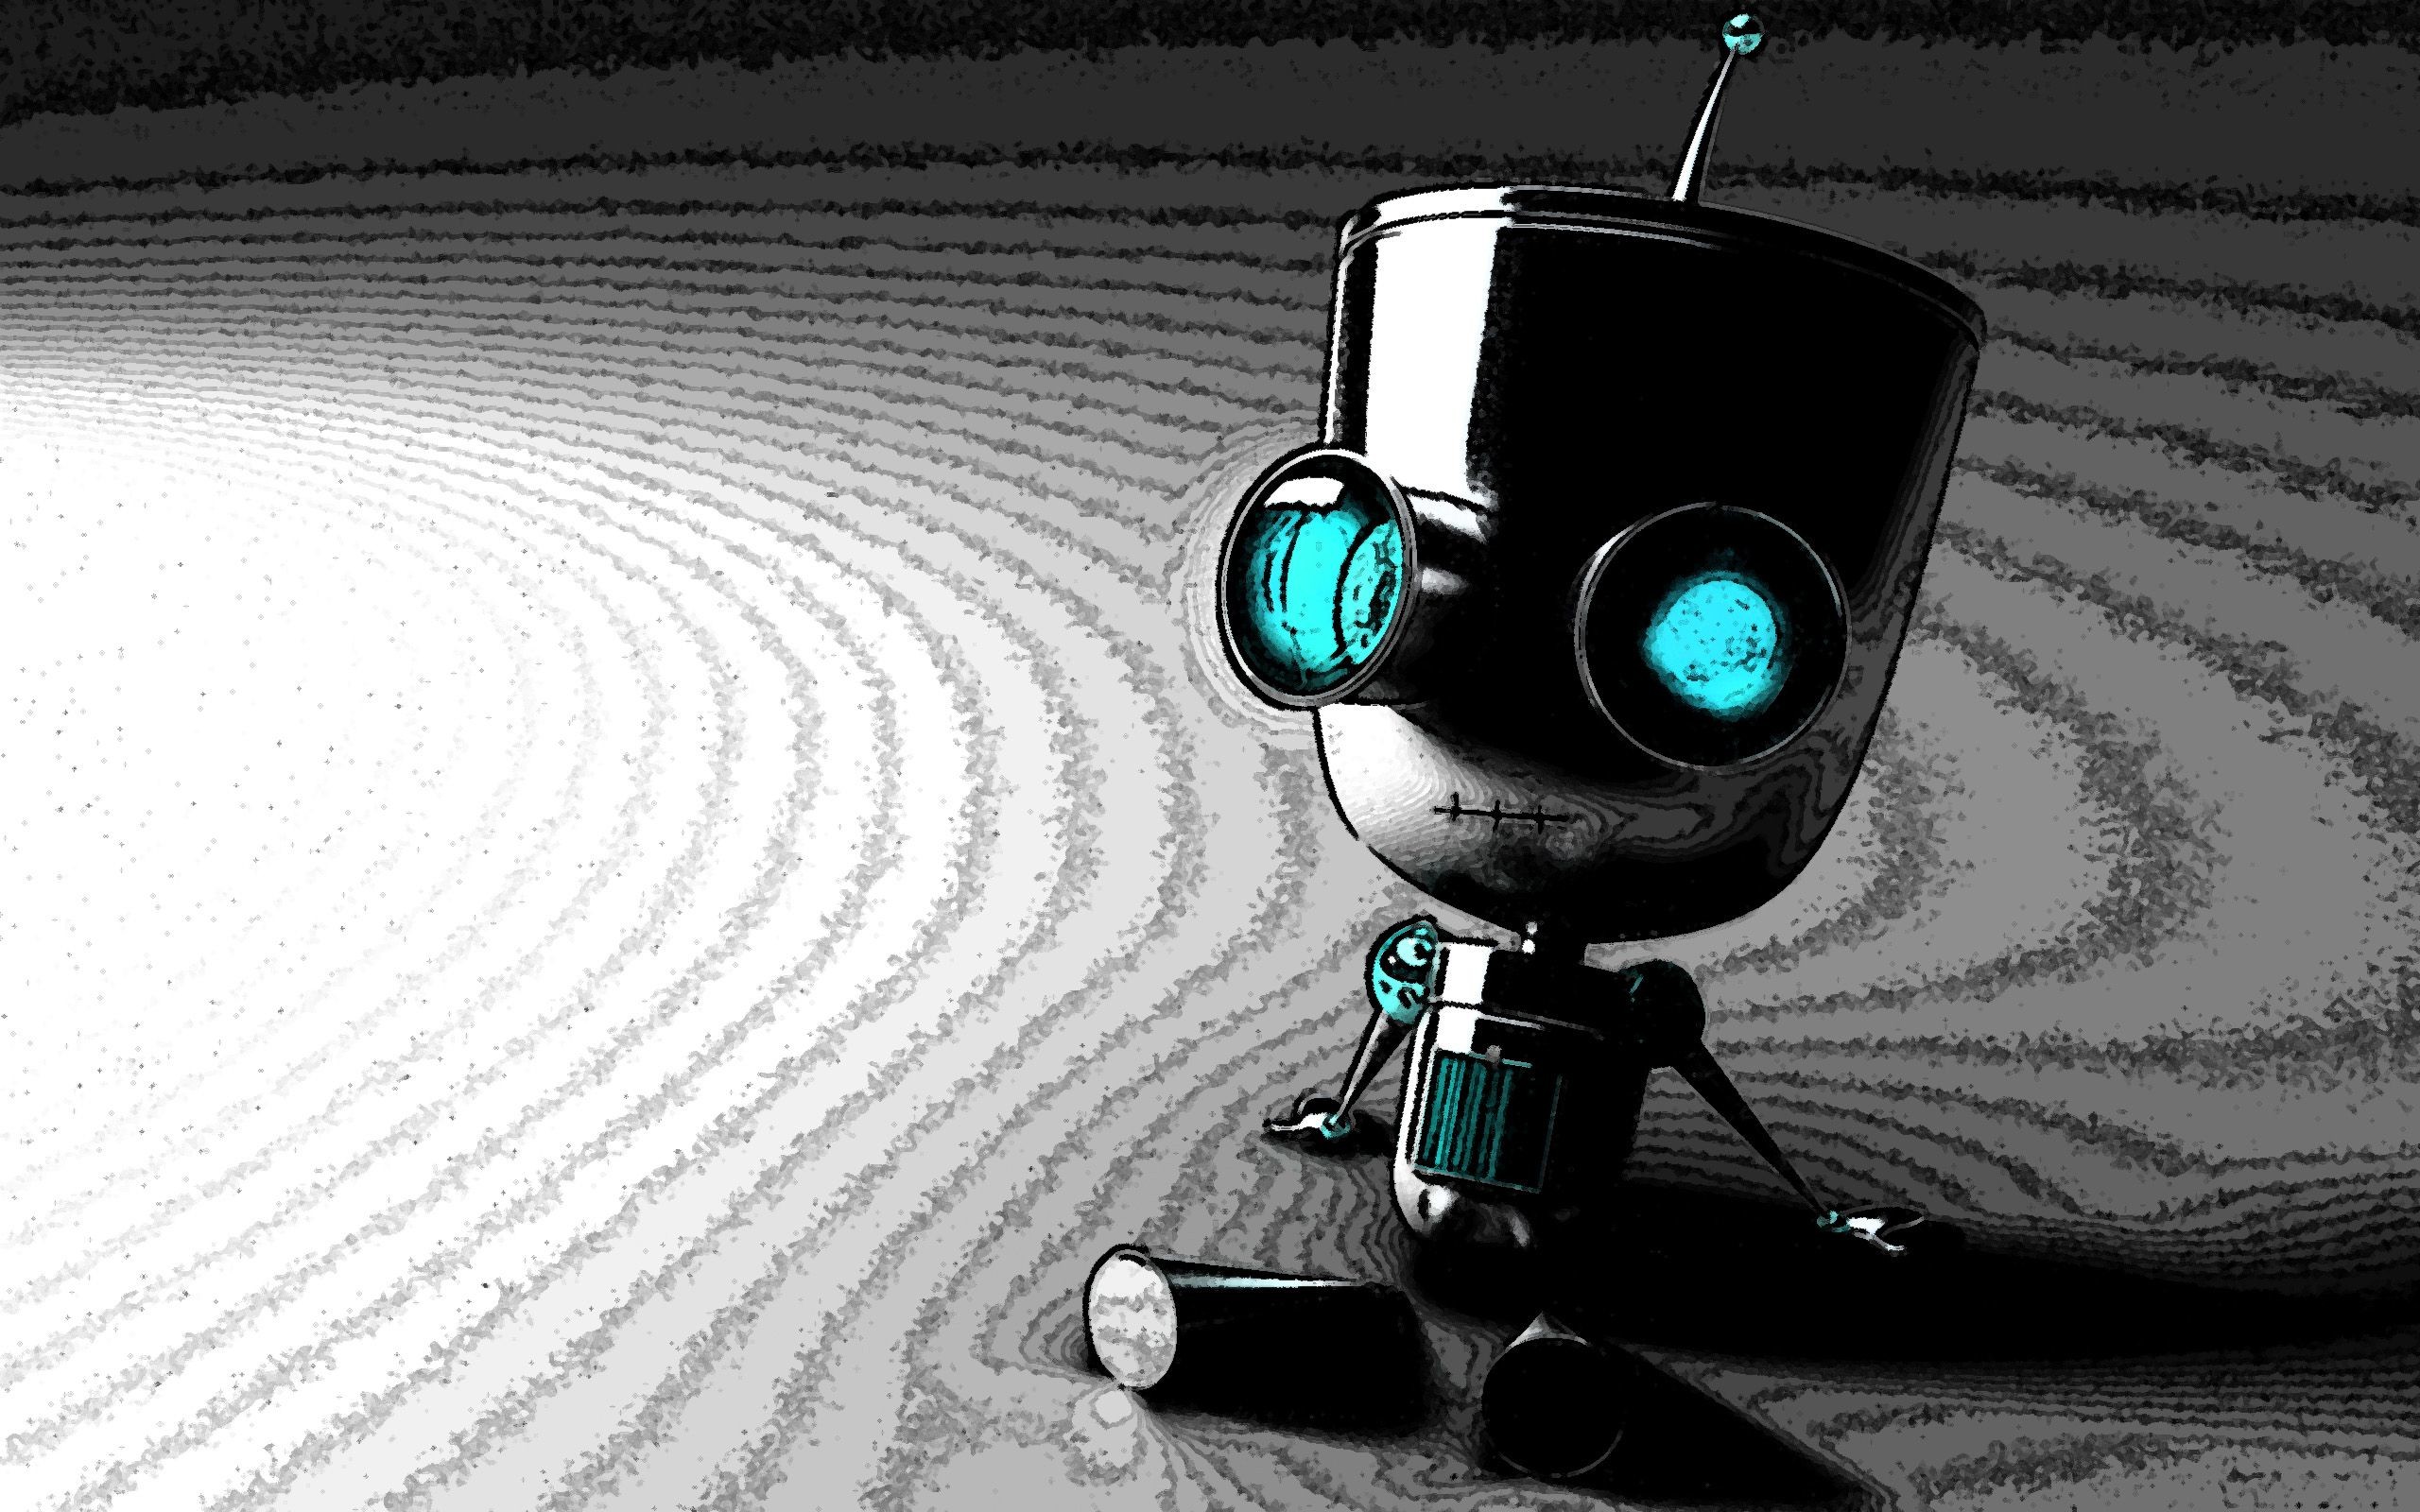 2560x1600 Hd wallpaper robot - Hd Robot Wallpapers Download. Hd wallpaper robot - Hd Robot  Wallpapers Download